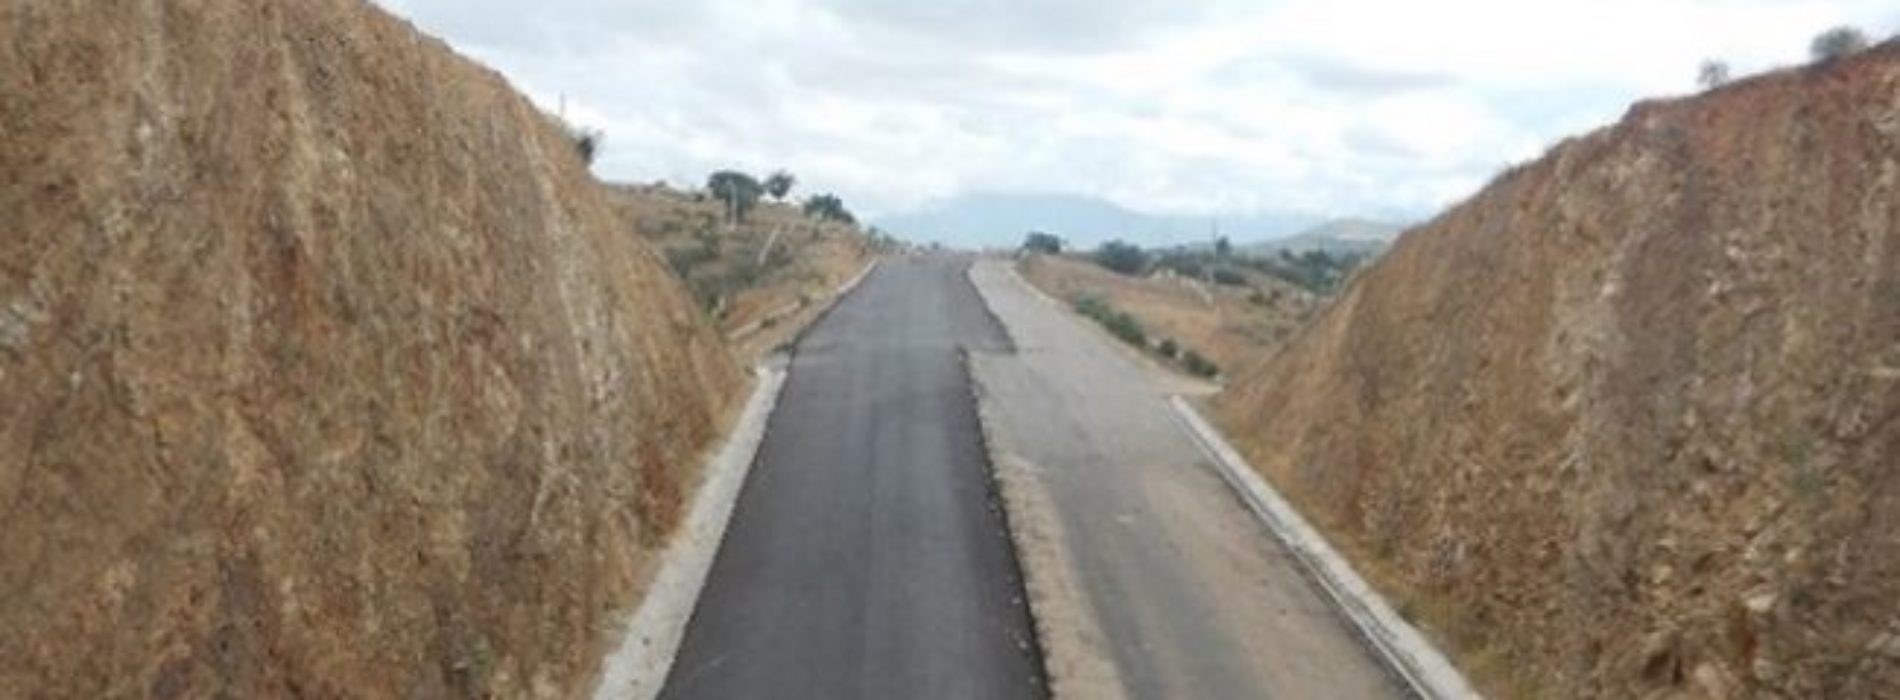 Hoy se prevé reactivación de la construcción de la carretera
Oaxaca-Puerto Escondido